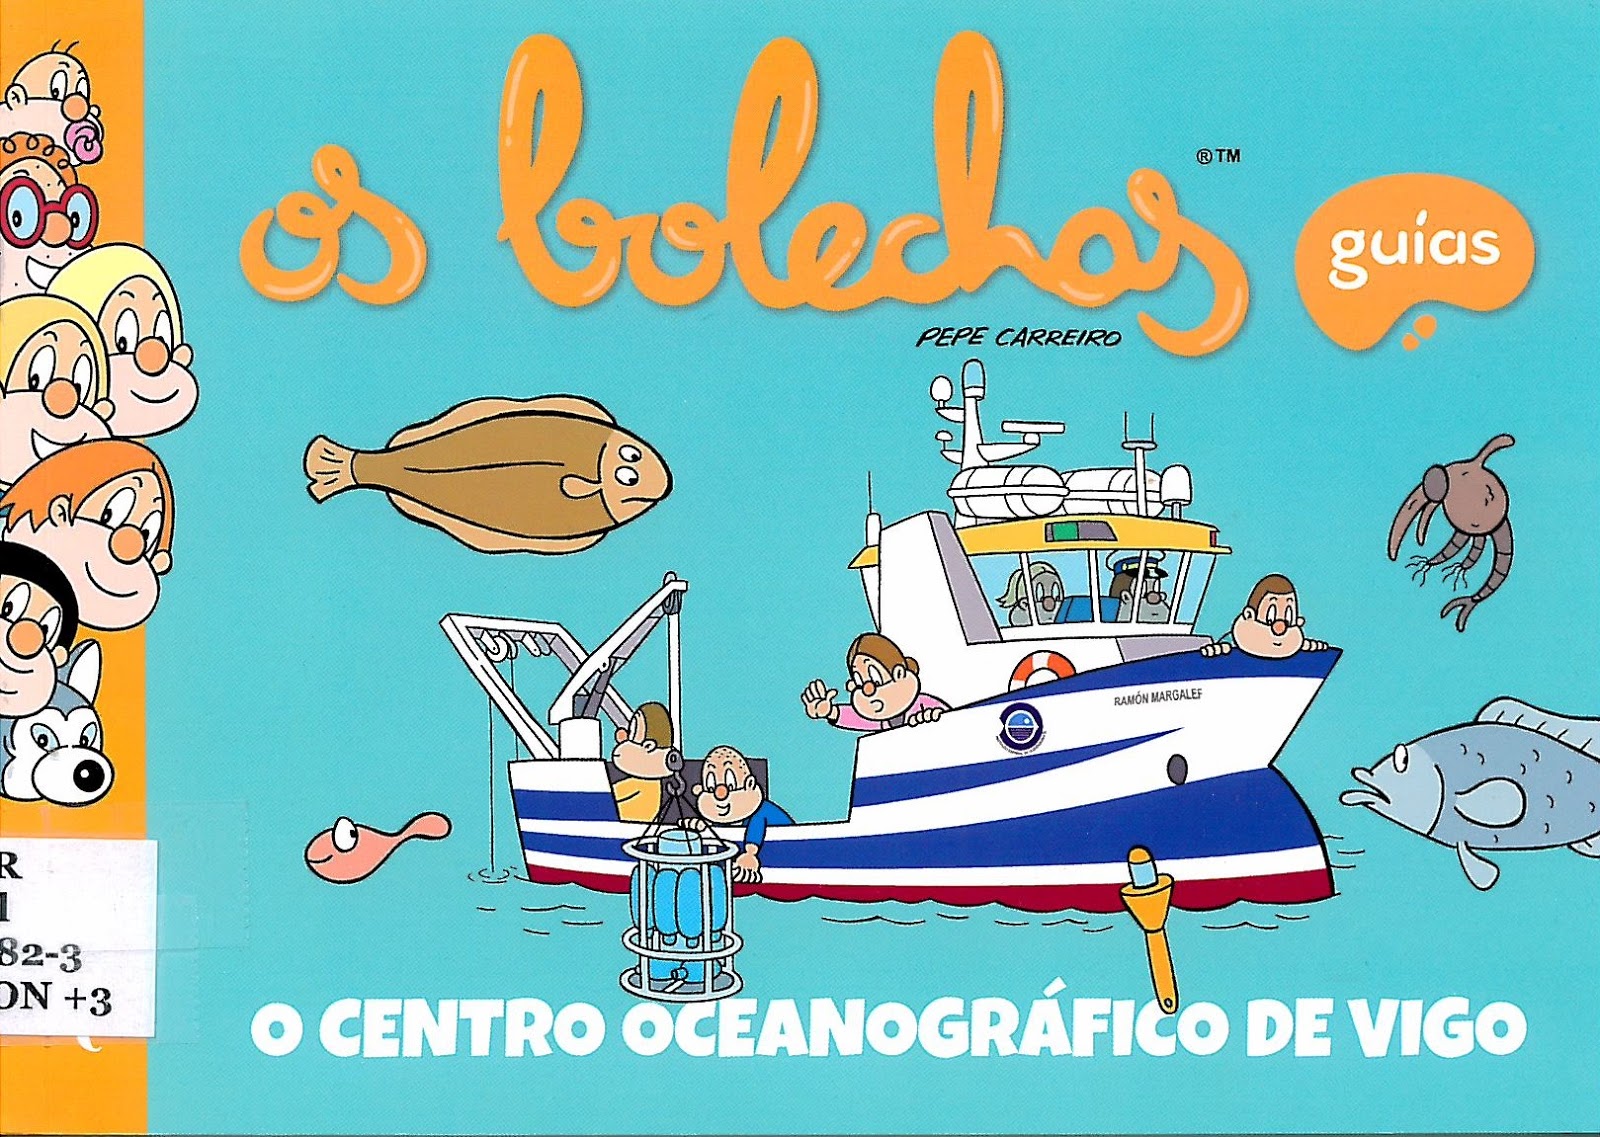 O Centro Oceanográfico de Vigo. Guías “Os Bolechas”